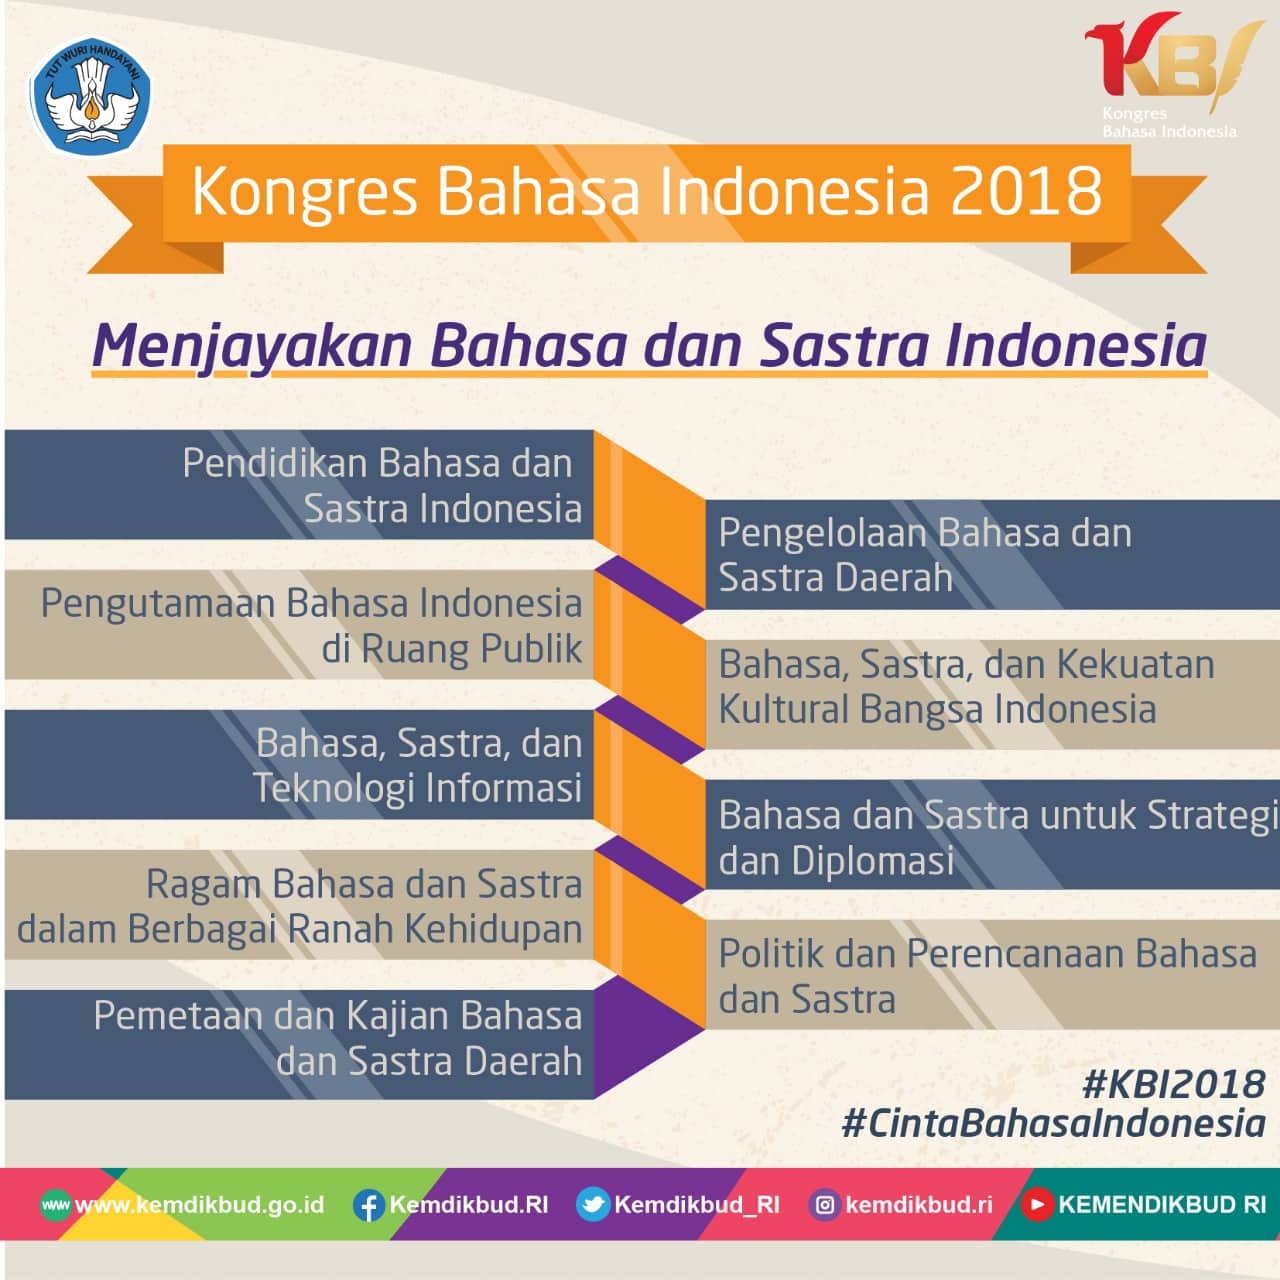 Menjayakan Bahasa dan Sastra Indonesia